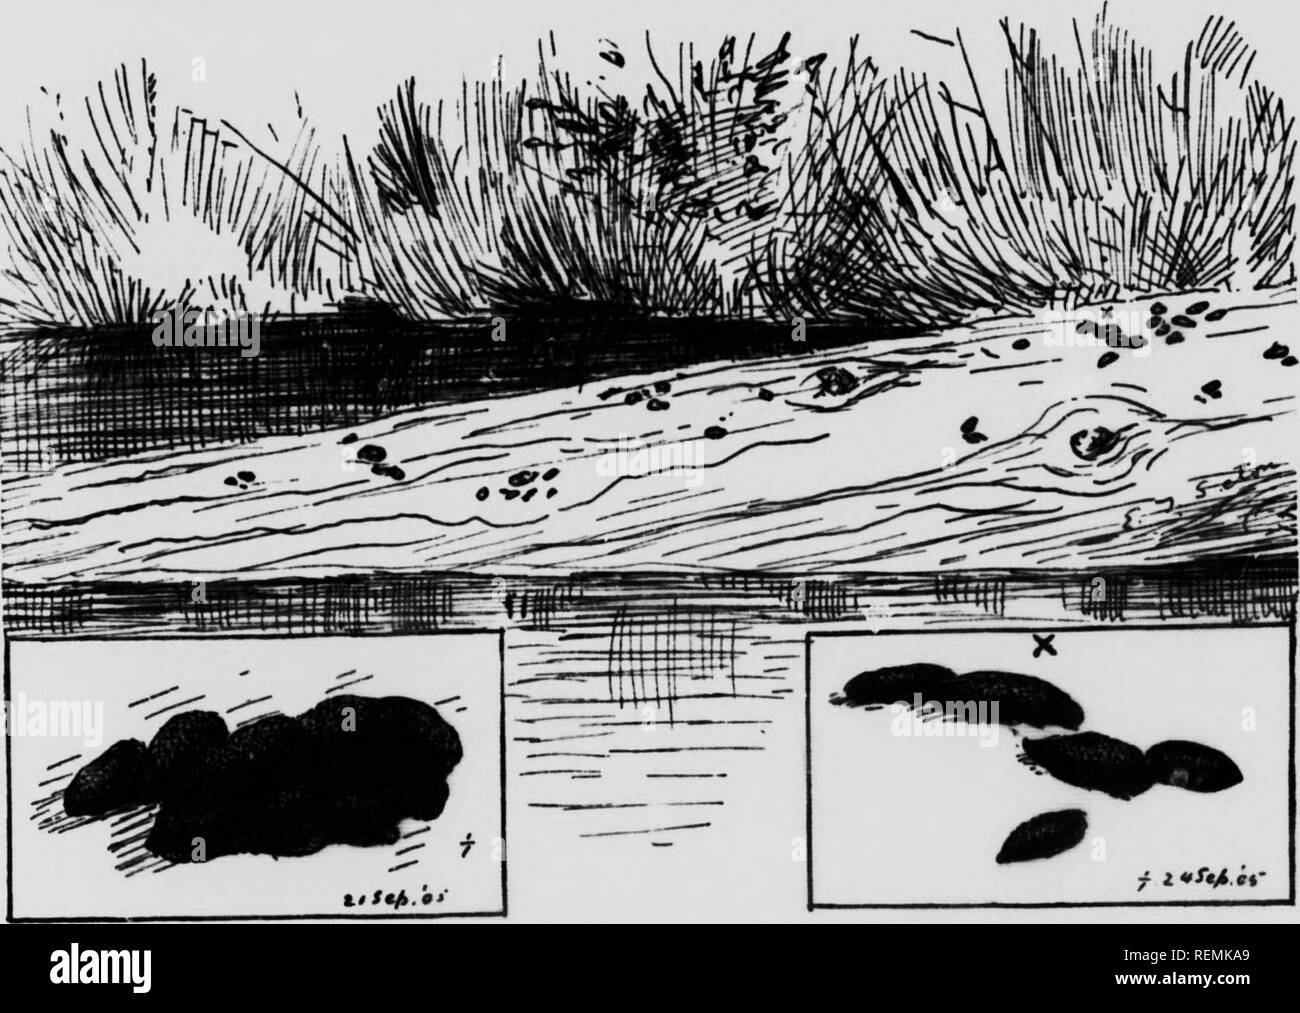 . Leben - Geschichten der nördlichen Tiere [microform]: ein Konto der Säugetiere von Manitoba. Säugetiere; Säugetiere; MammifÃ¨res; MammifÃ¨res. Bisamratte 543" Mai 17,1905. Zu-Tag als ich die Brücke am Hauptantrieb in Wyndygoul Park näherte, sah ich eine Bisamratte auf der gegenüberliegenden Bank beschäftigt, das Sammeln von Gras, und während ich leise Stand zu beobachten, er stürzte sich die Bank, offenbar in großer Eile, mit dem Gras hervorstehende von beiden Seiten in seinem Mund, und schwamm kräftig über den Pool auf das nahe Ufer, wo ich stand; er. Fio. Il&lt; âLos lhÂ "T" "U" "hvourile L'plÂ ndinÂ" "C" und "Neuigkeiten" - depoi nf igv Bisamratte. Stockfoto